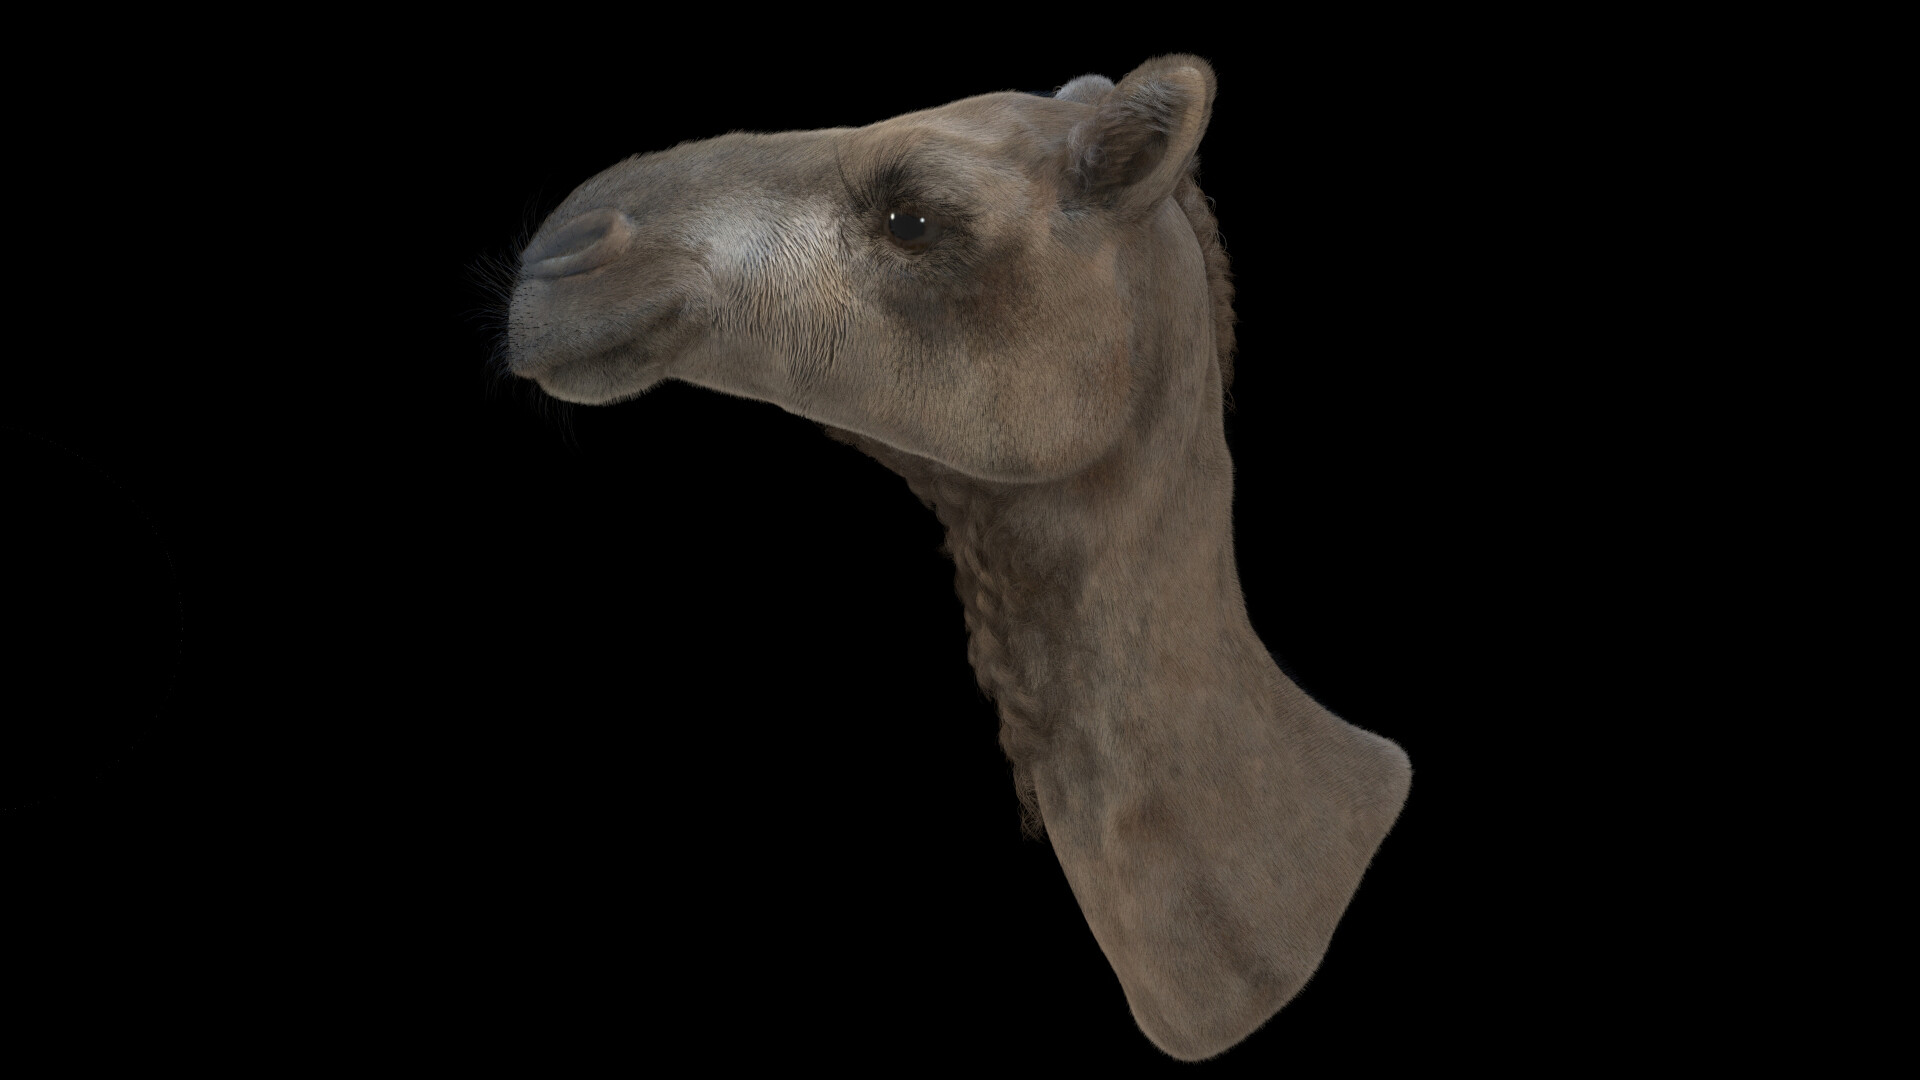 ArtStation - Camel's head